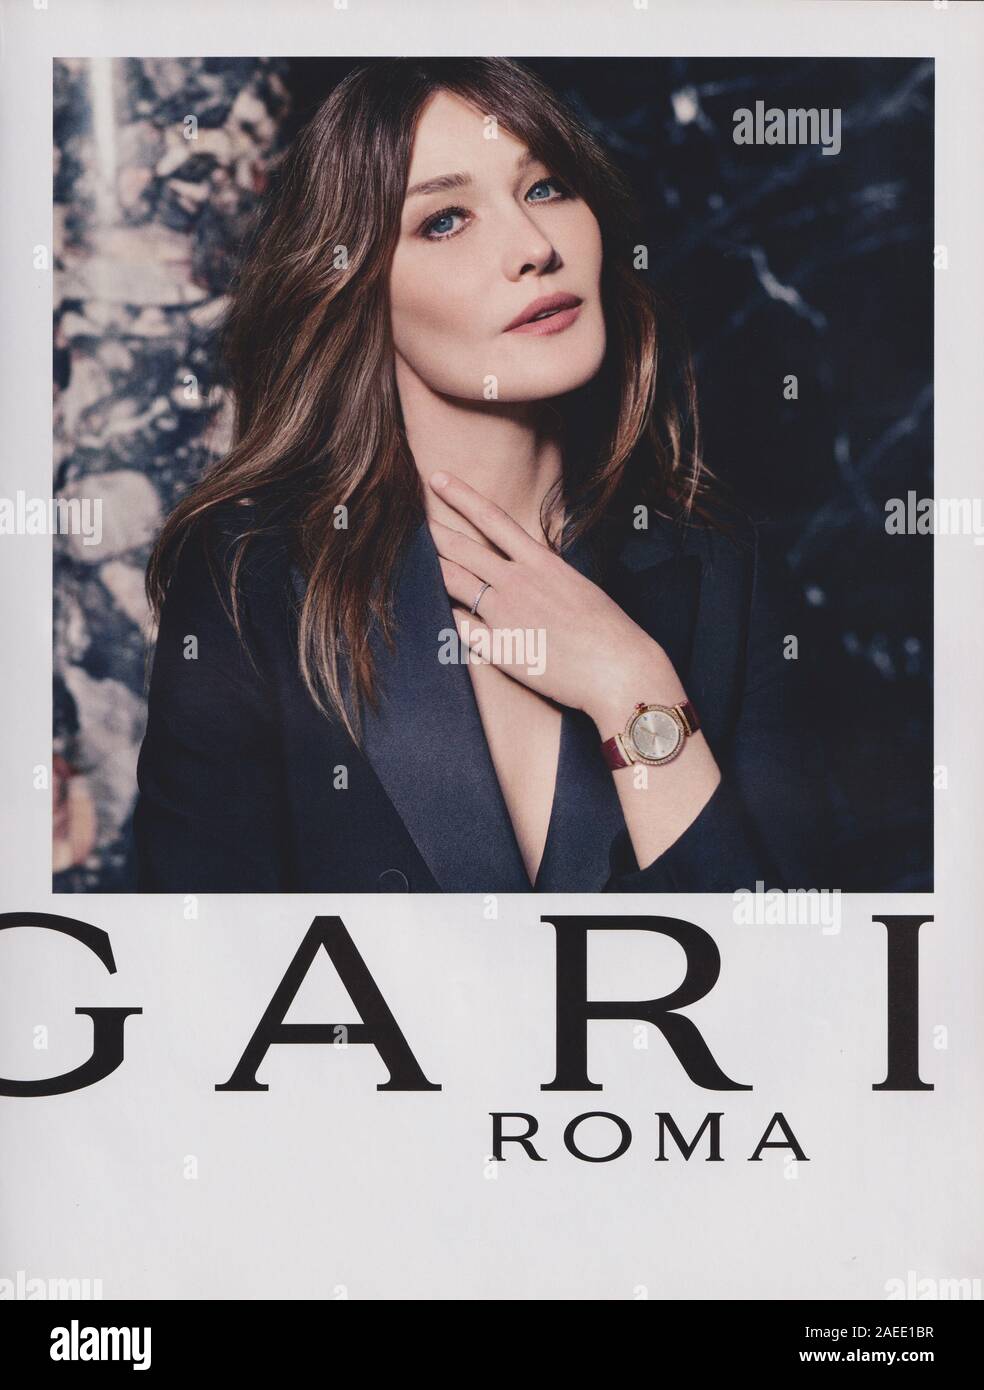 poster advertising BVLGARI ROMA fashion 